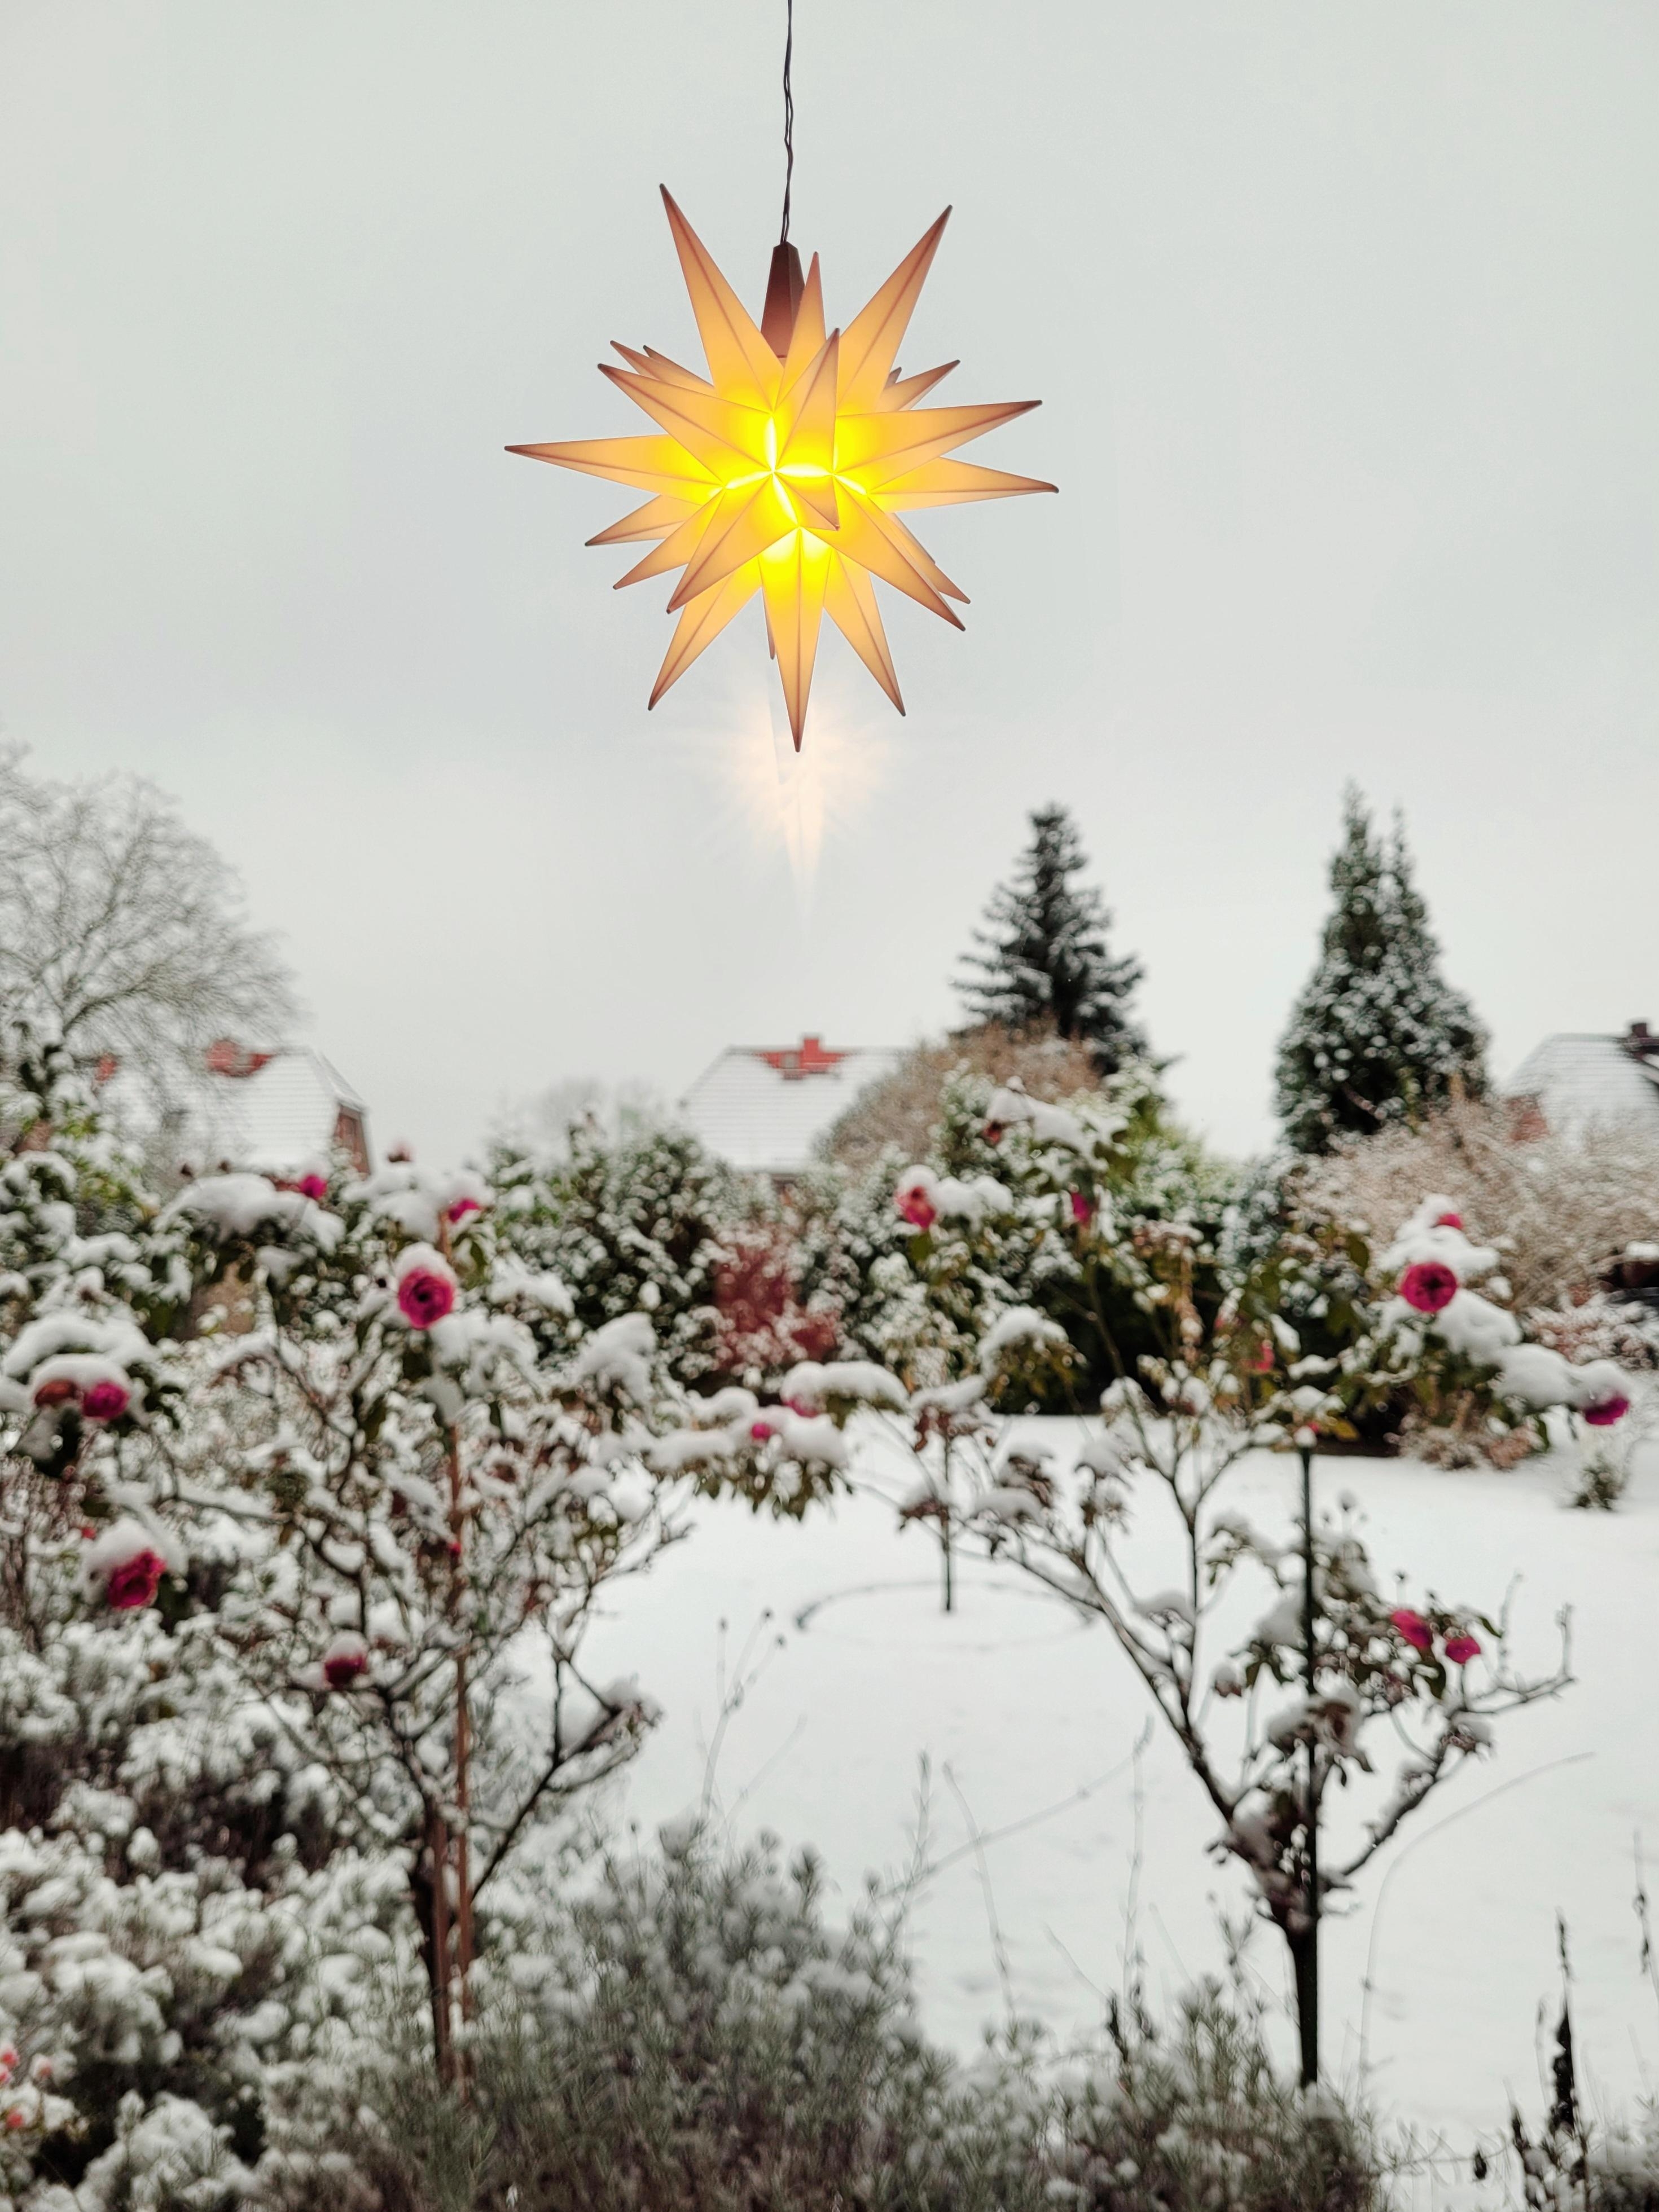 snowy garden
#Herrenhuterstern #Stern #Garten #Winter #Weihnachten